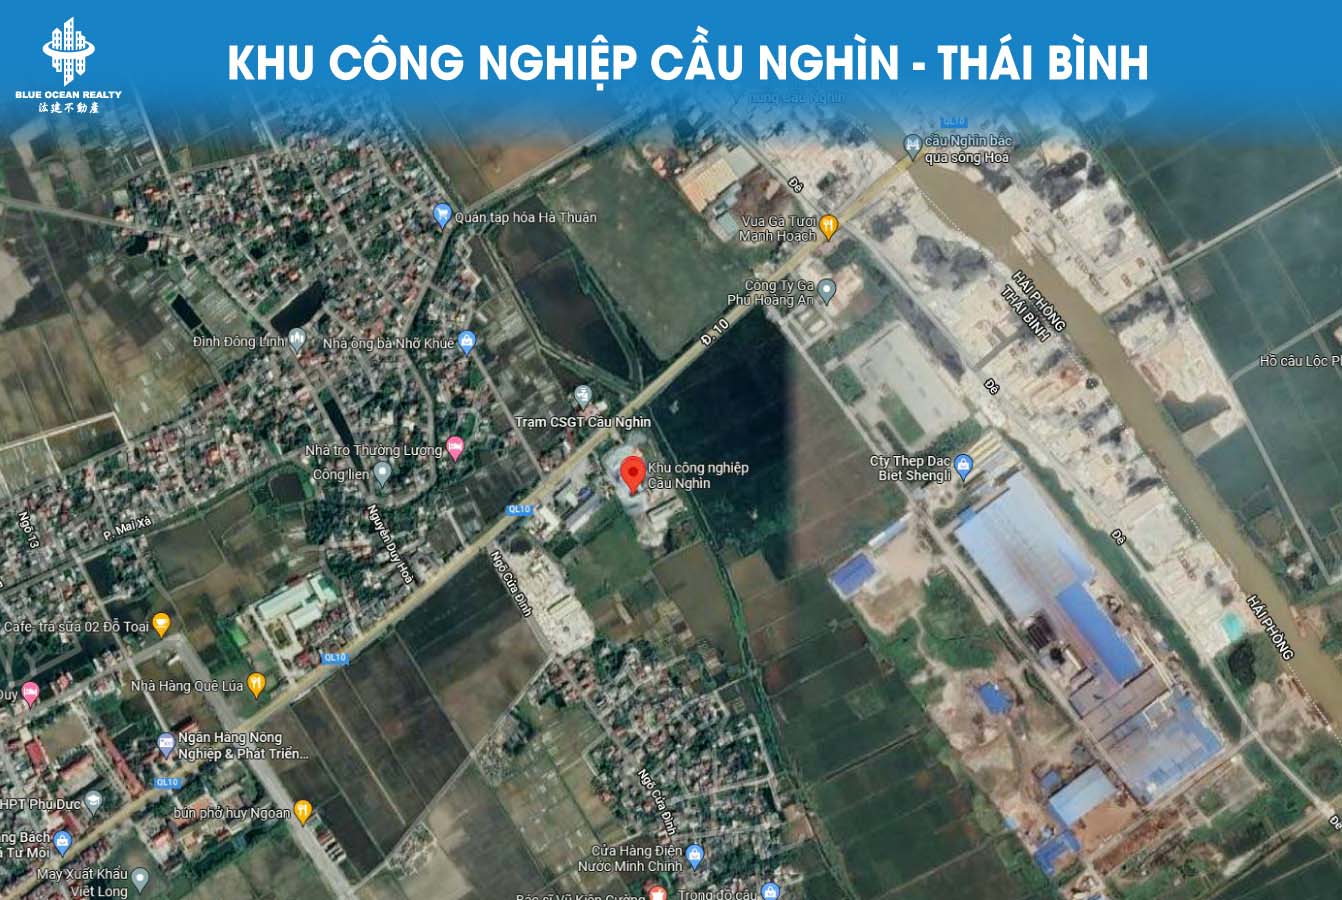 Khu công nghiệp (KCN) Cầu Nghìn - Thái Bình